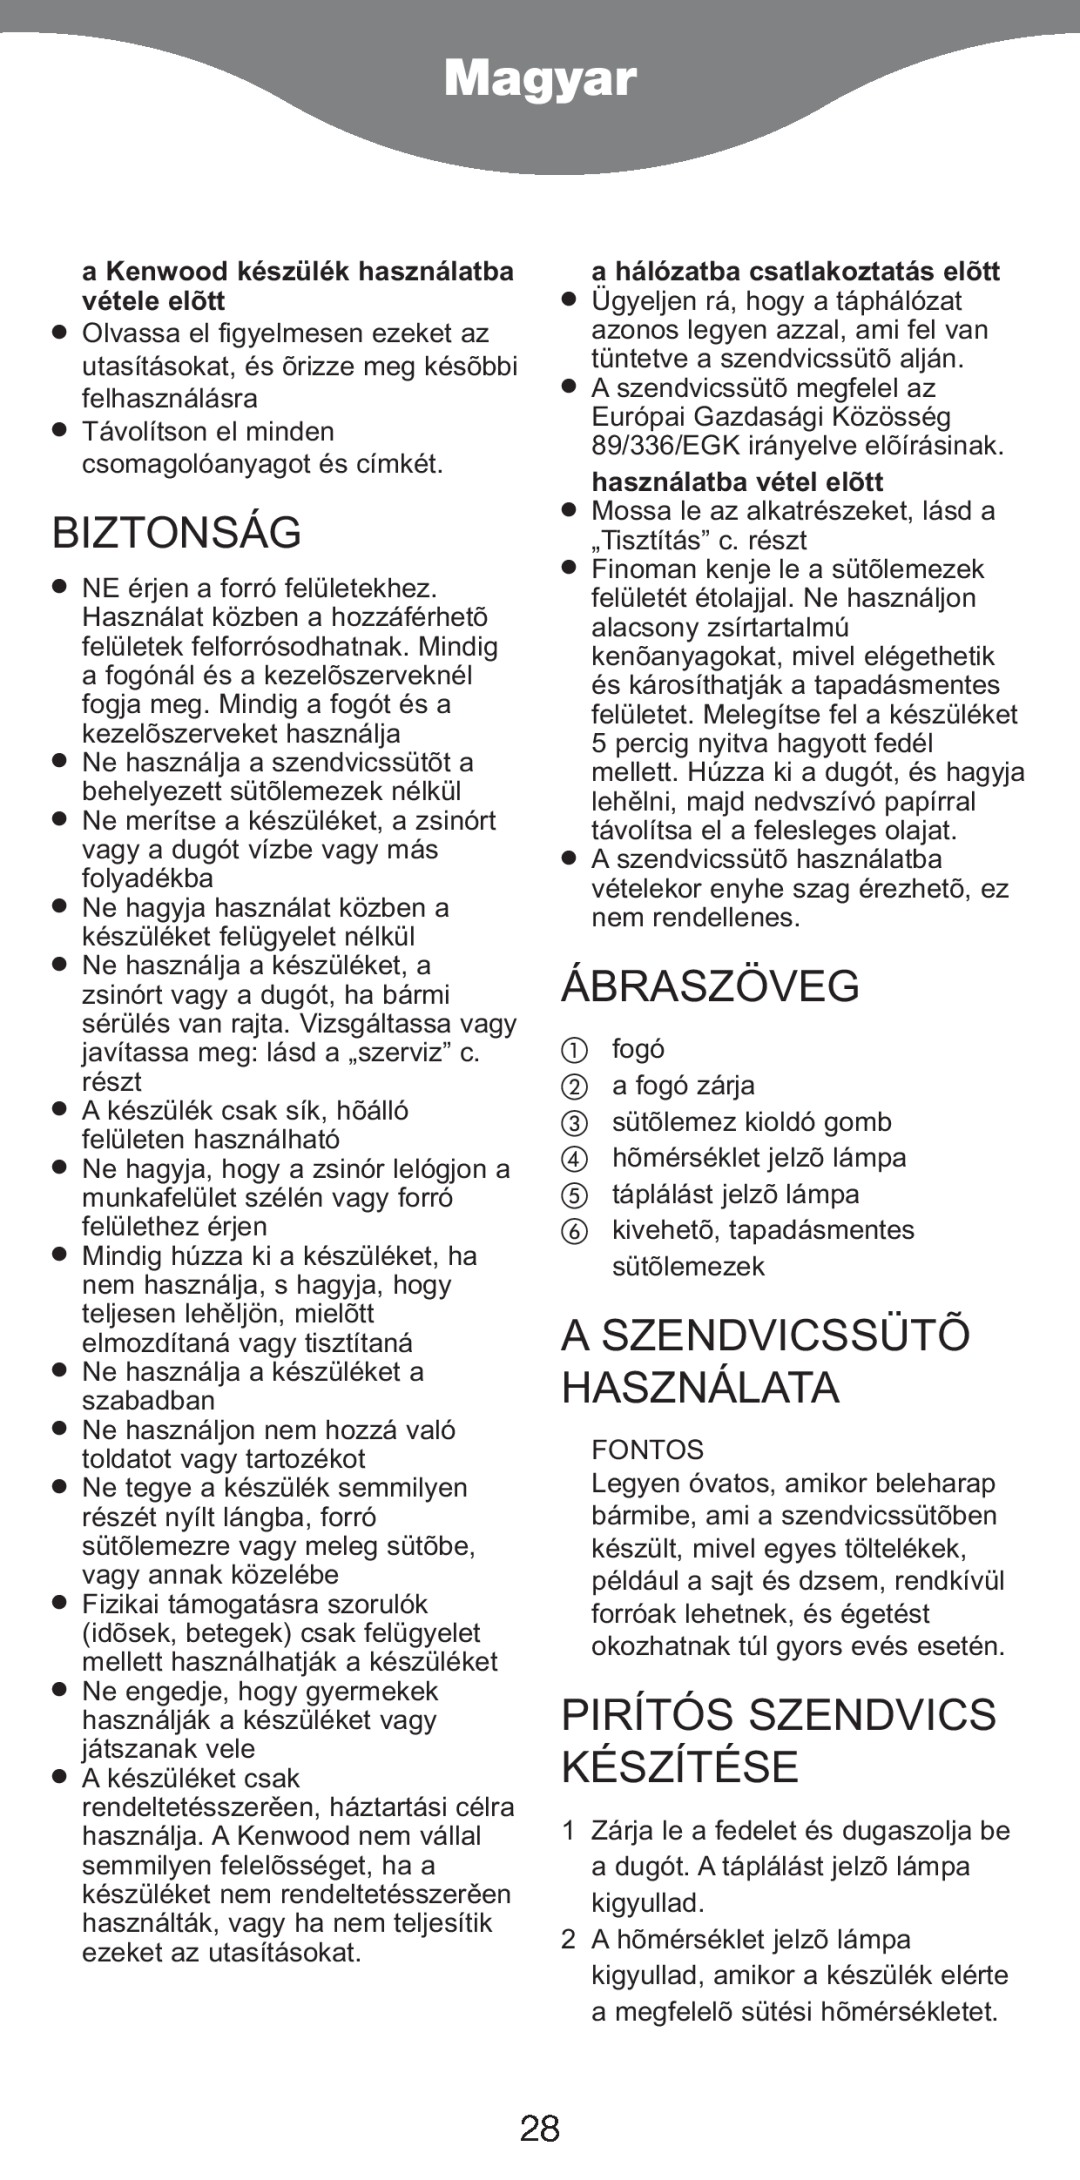 Kenwood SM420 manual Magyar, Biztonság, Ábraszöveg, Aszendvicssütõ Használata, Pirítós Szendvics Készítése 